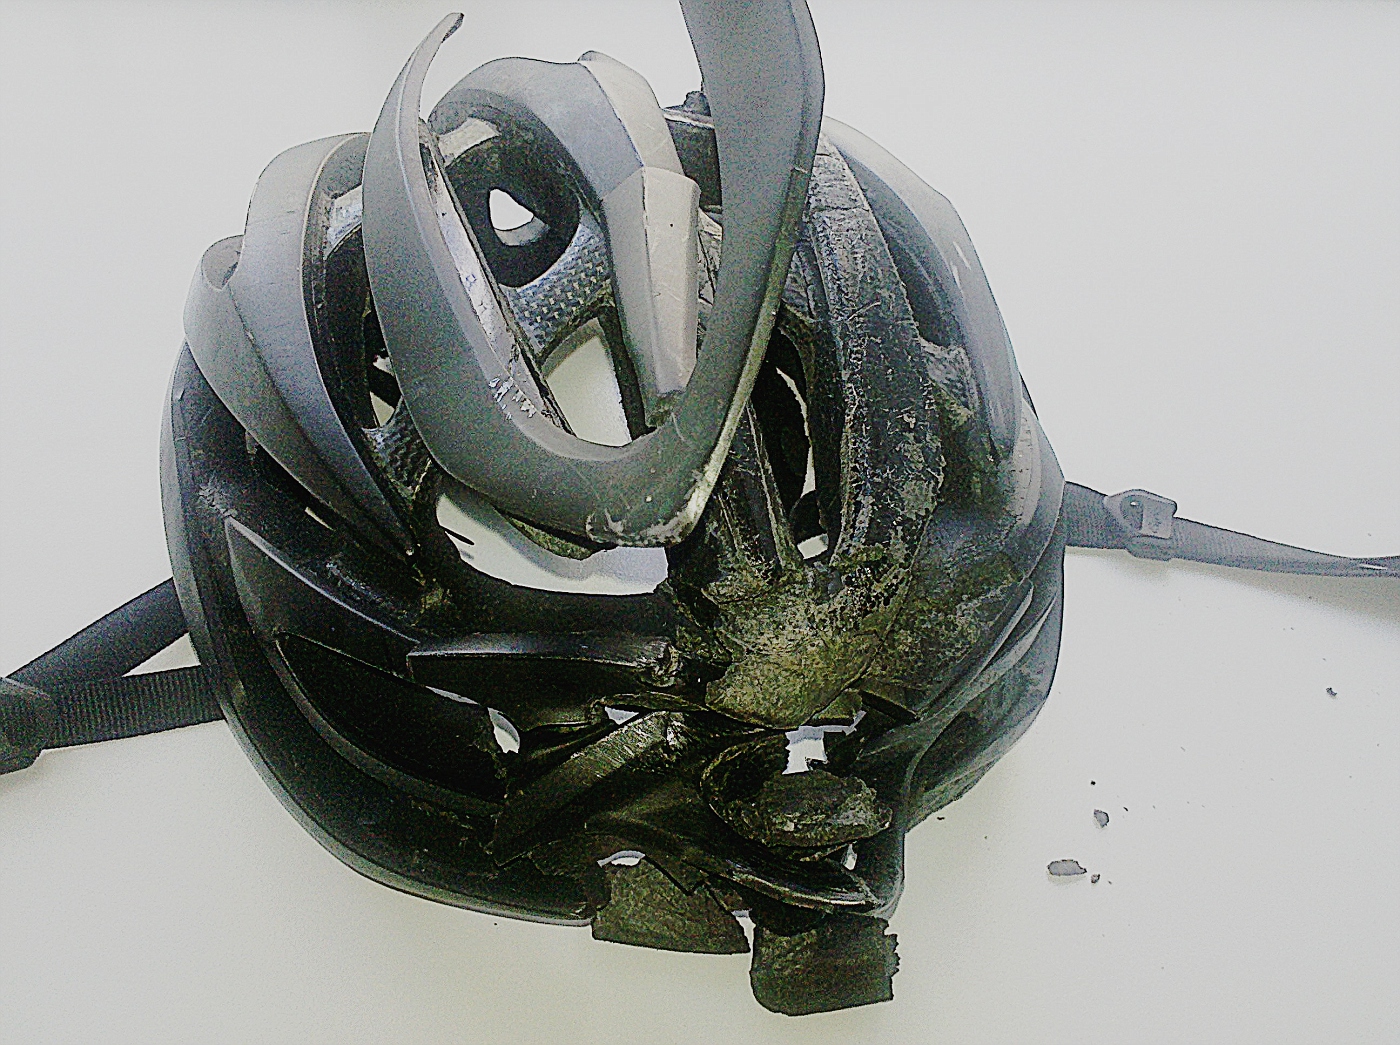 Manfred's broken helmet